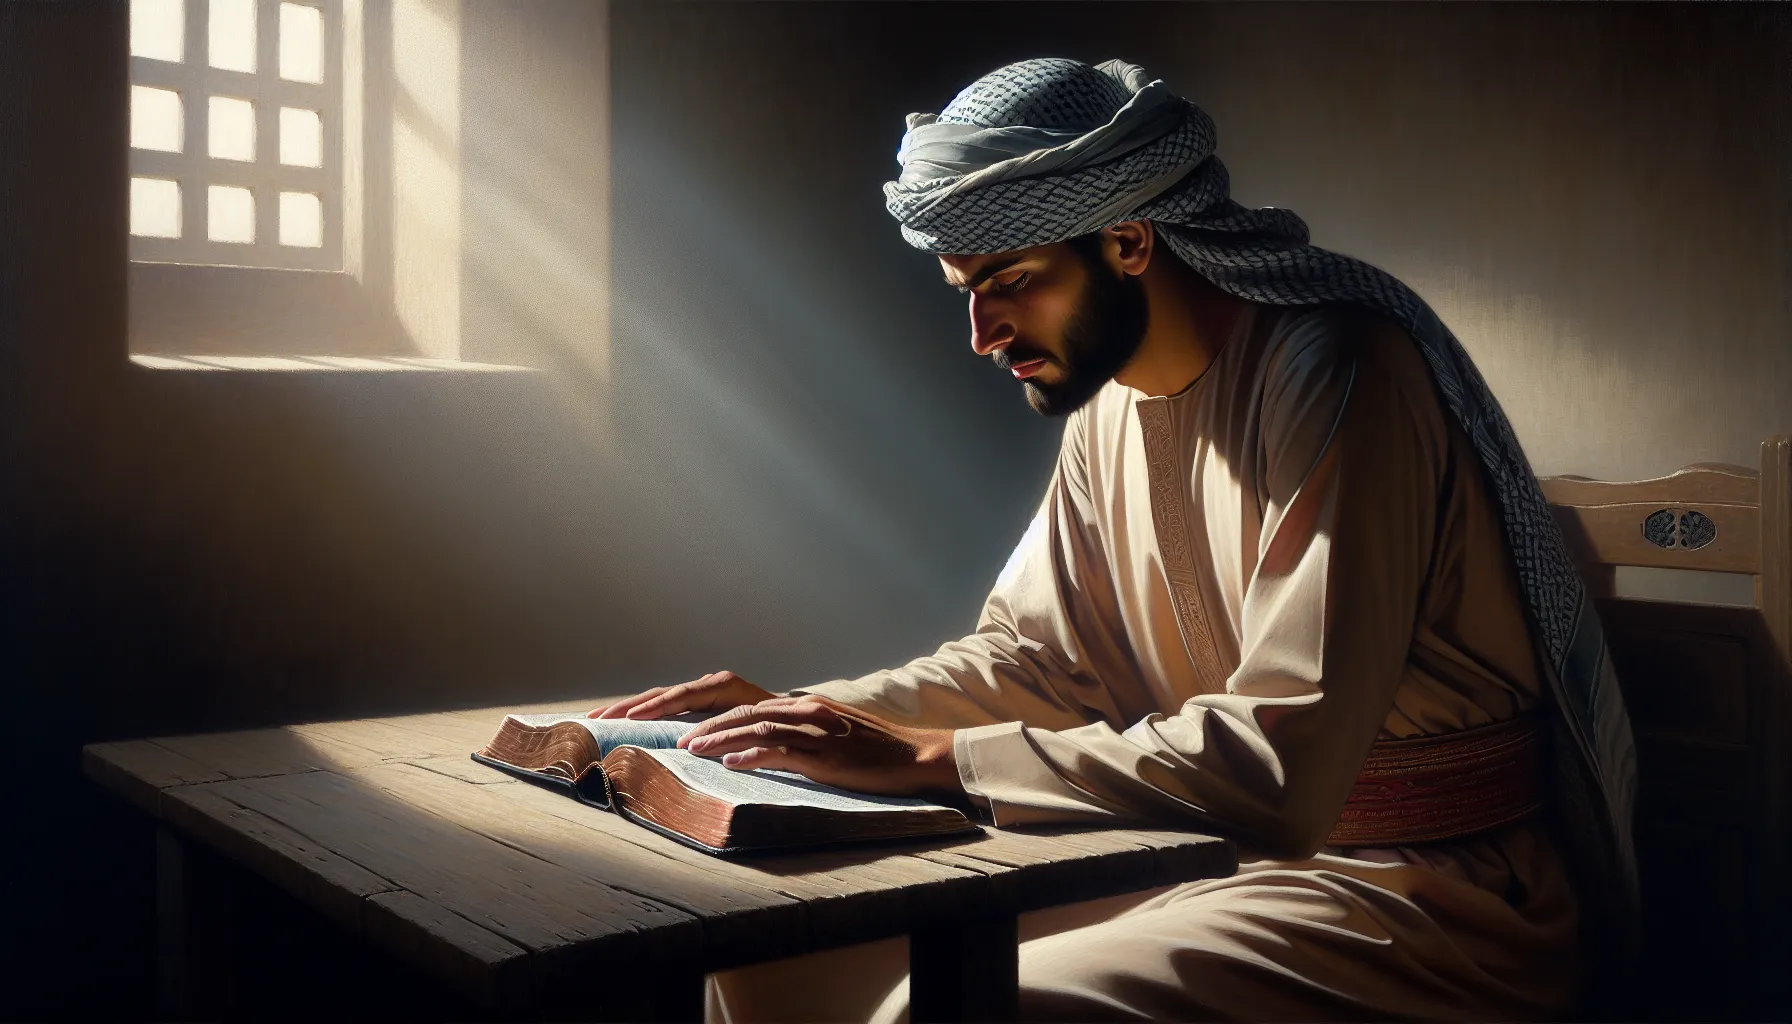 Imagen de una persona leyendo la Biblia y reflexionando sobre quién y por qué seguir sus enseñanzas.